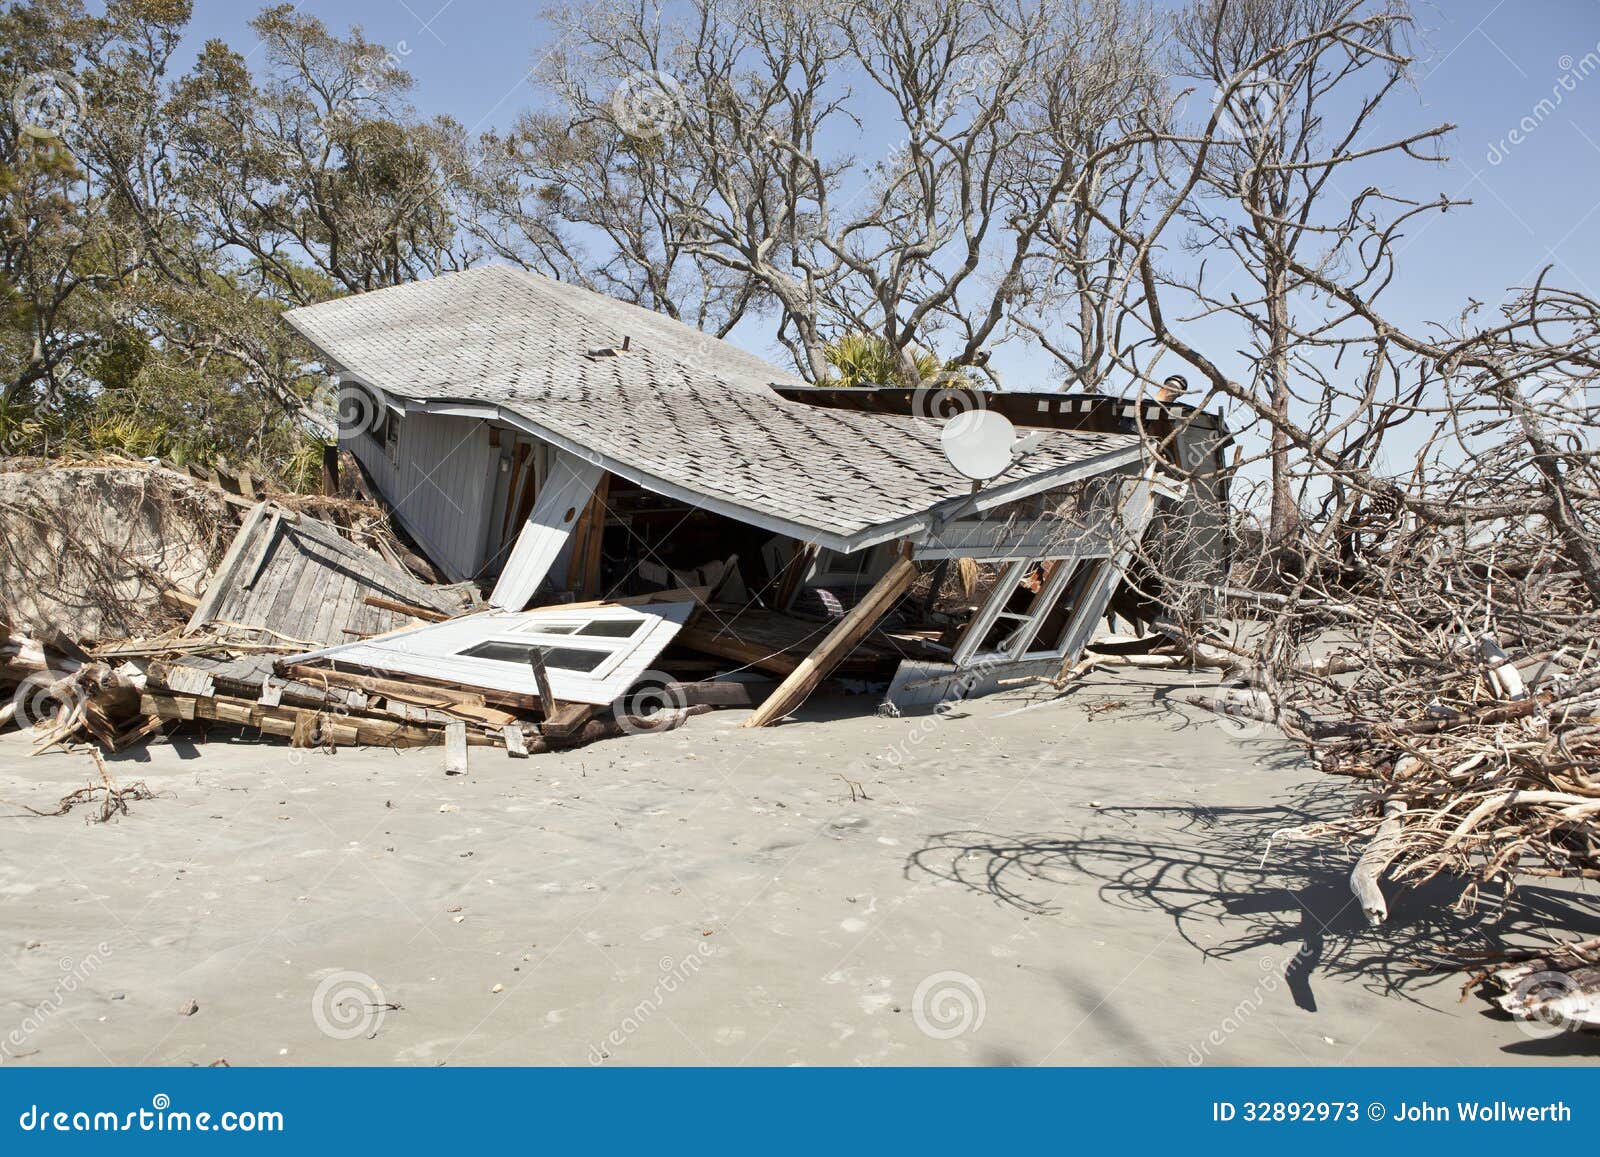 Brasil - Venezuela crisis economica - Página 20 Casa-destruida-por-la-inundaci%C3%B3n-32892973